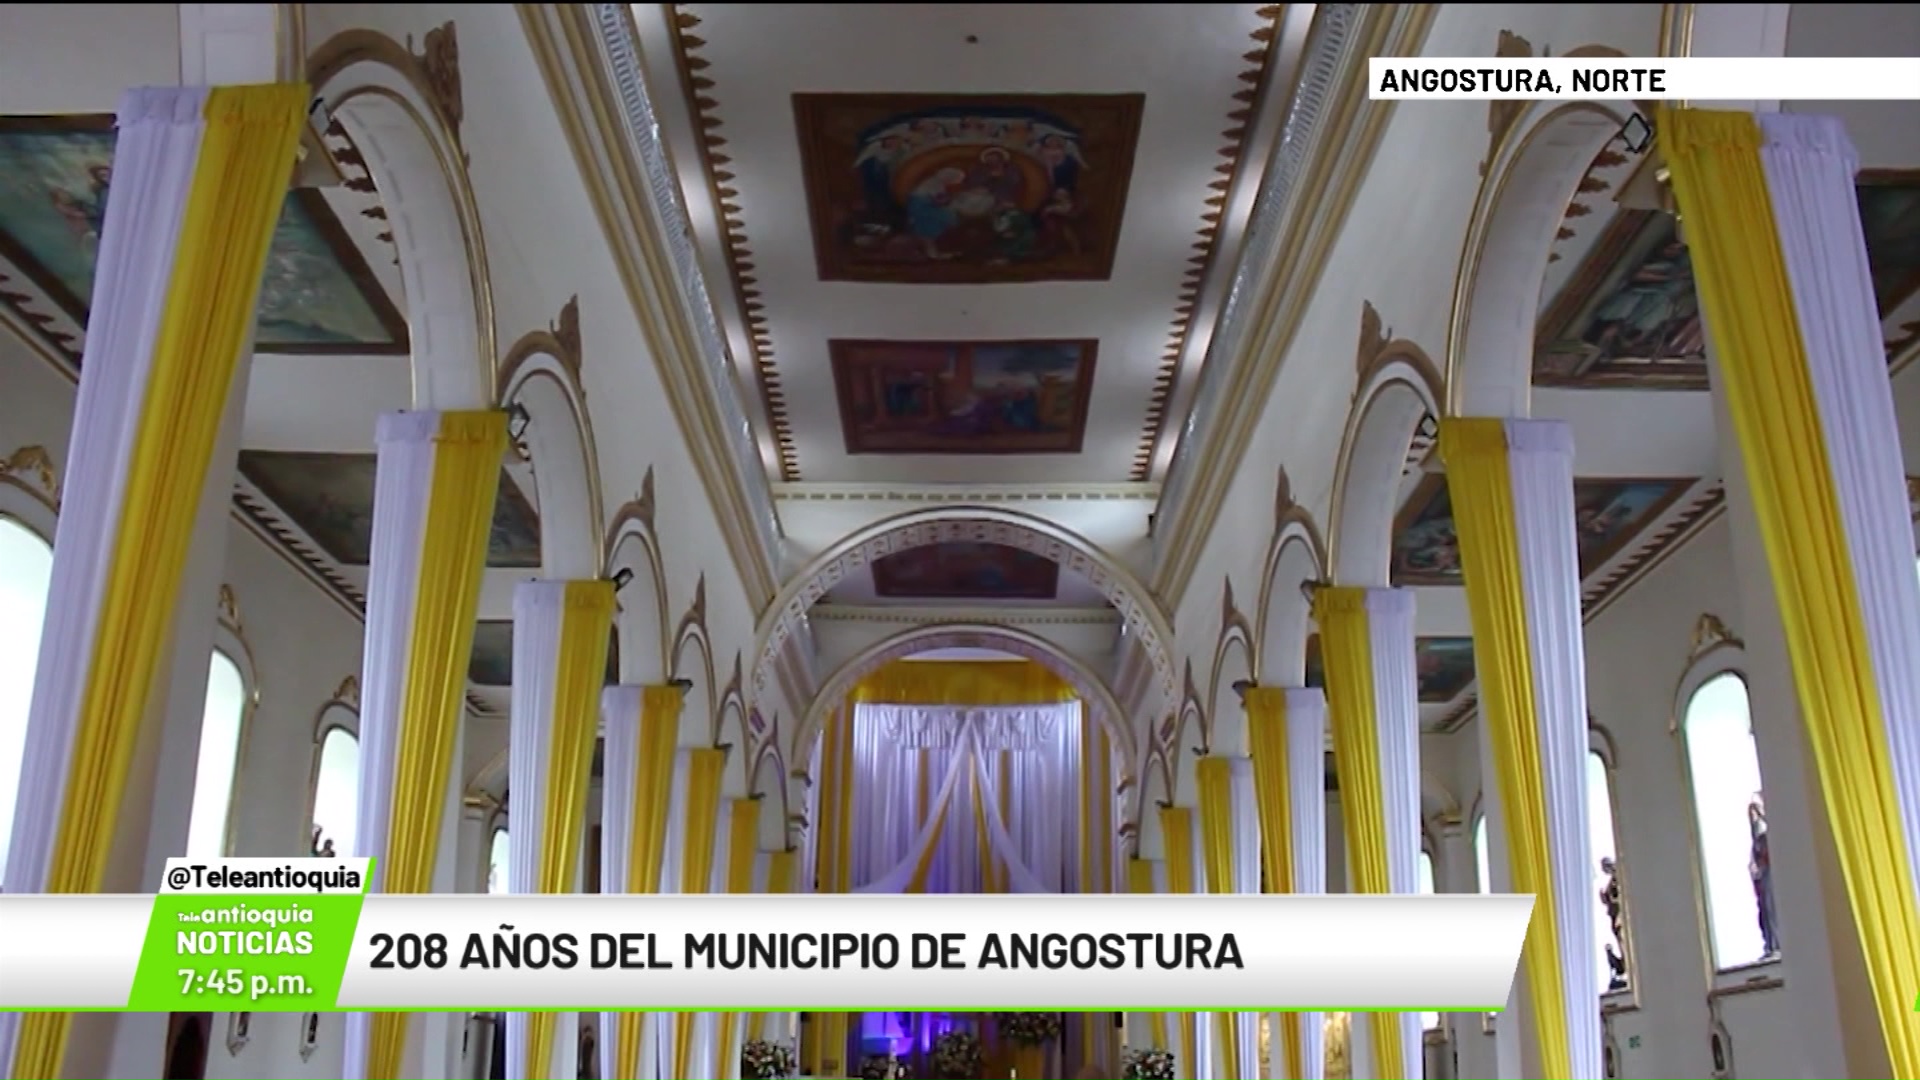 208 años del municipio de Angostura